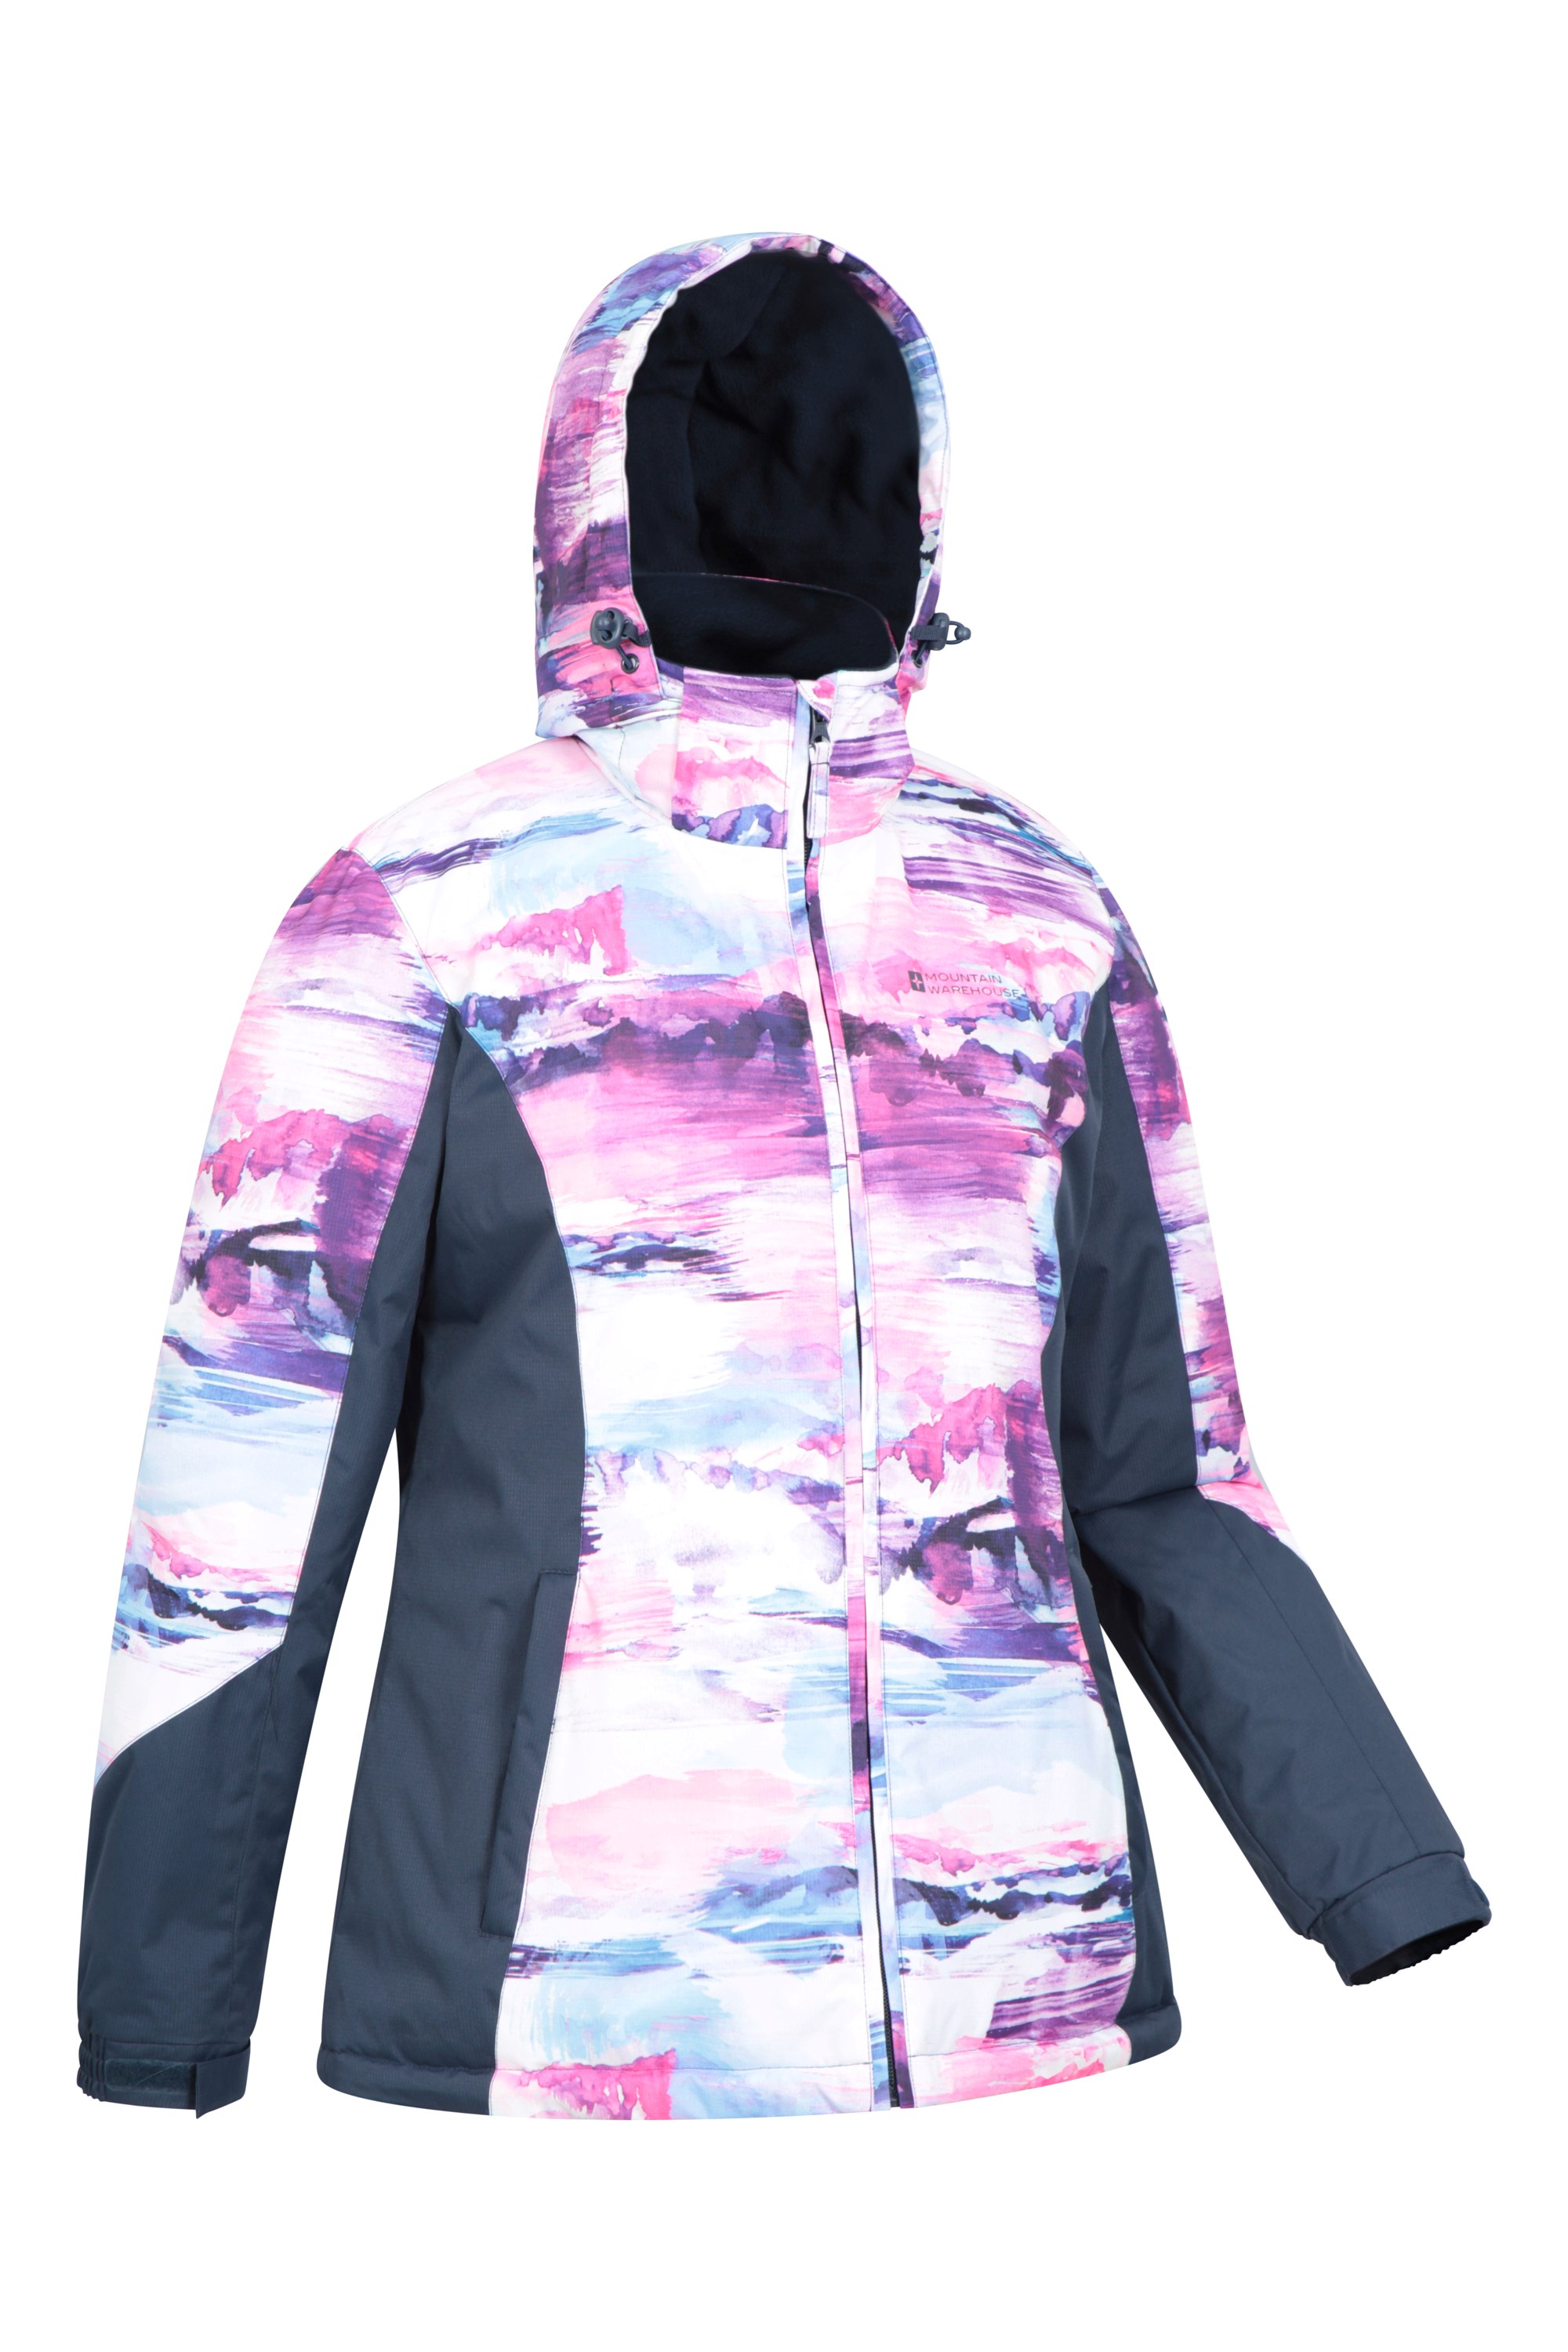 Mountain Warehouse Veste de ski Dawn Femme - Résistante à la neige, Chaude,  Manteau de ski à doublure polaire, Capuche, poignets et bordure ajustables